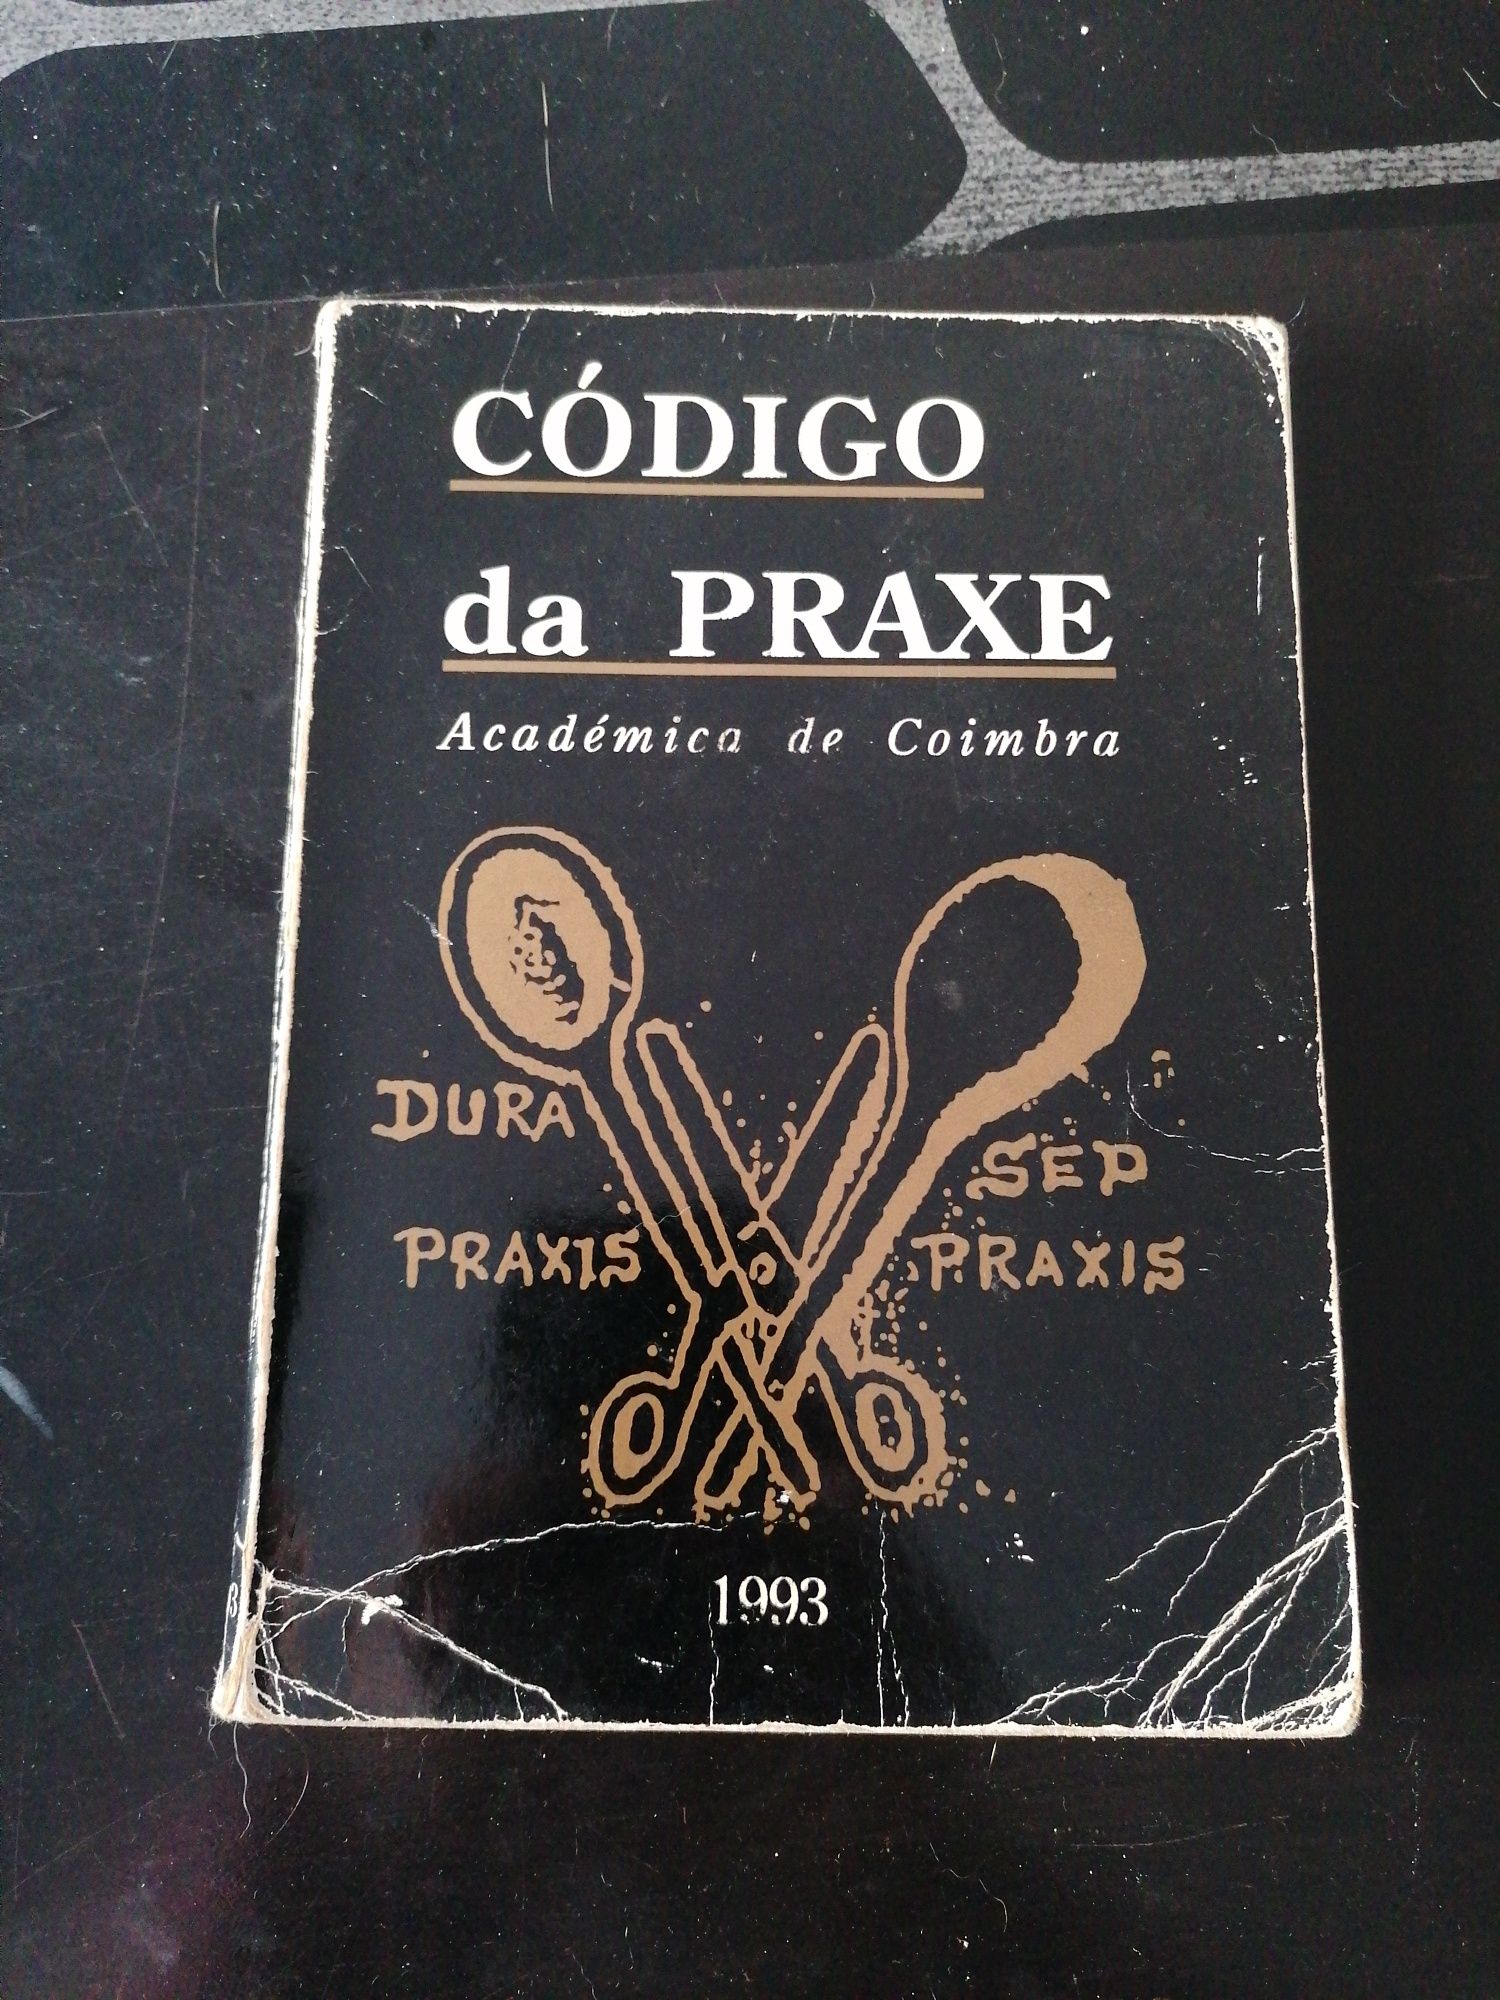 Código da praxe, 1993, académica de Coimbra